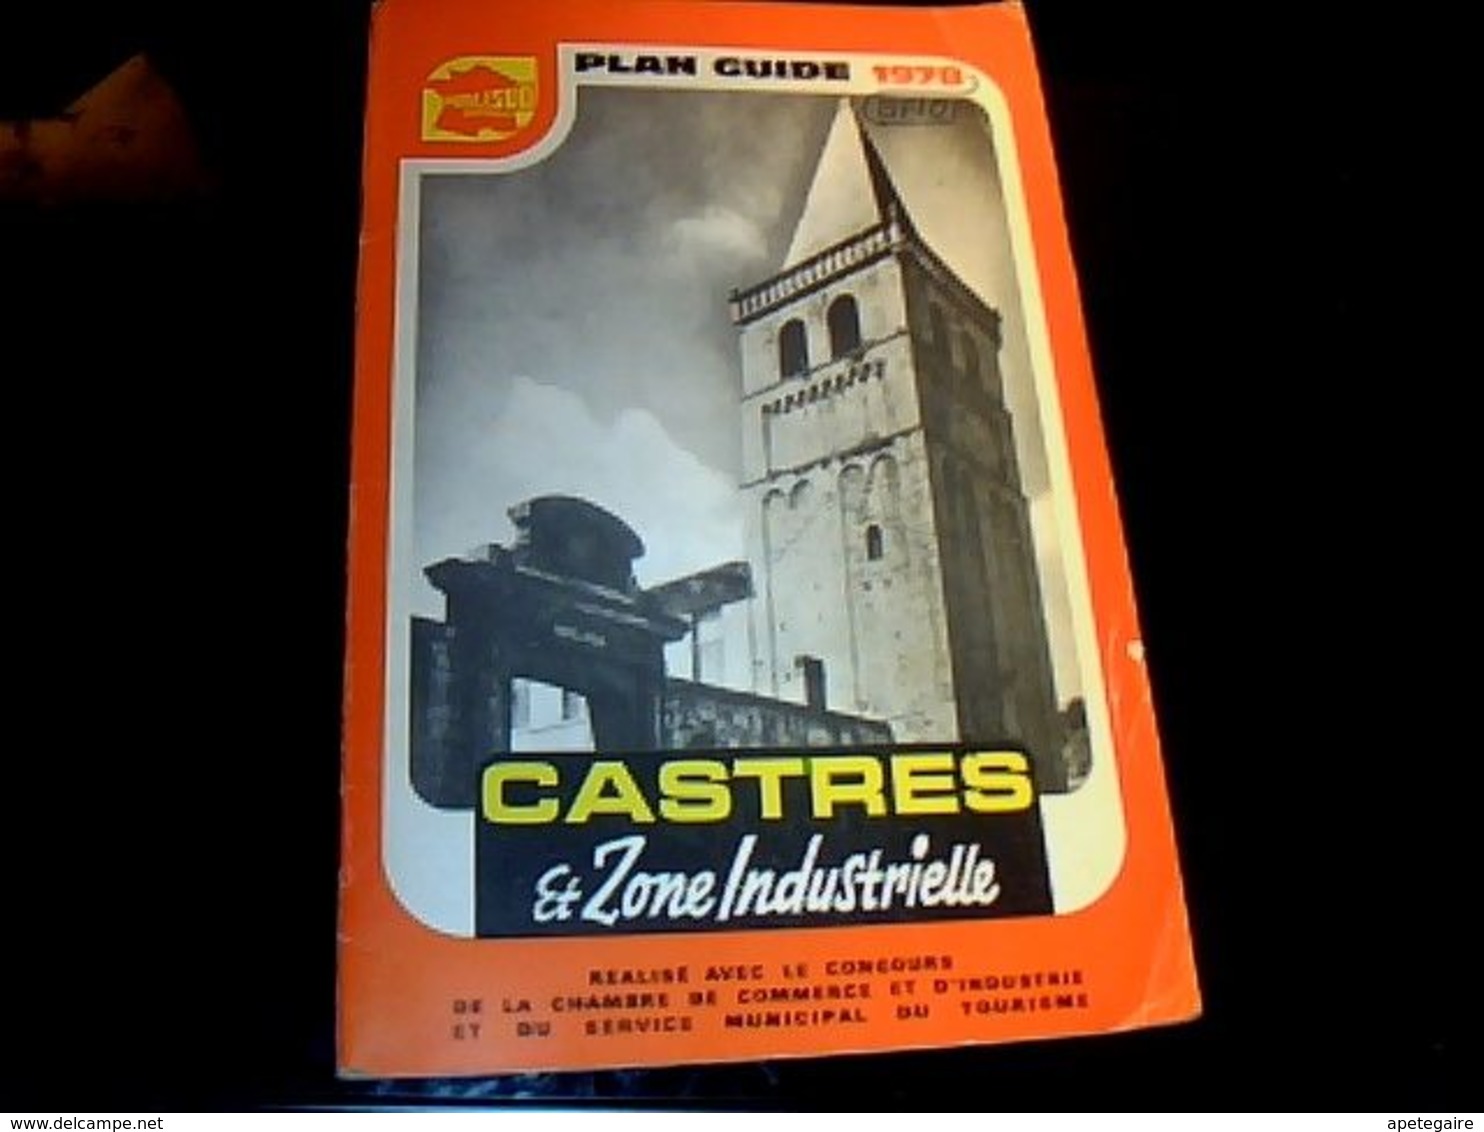 Dépliant Touristique Plan Guide Publisud Castres Et Zones Industrielles 1978 Avec Des Pubs & Plan - Tourism Brochures